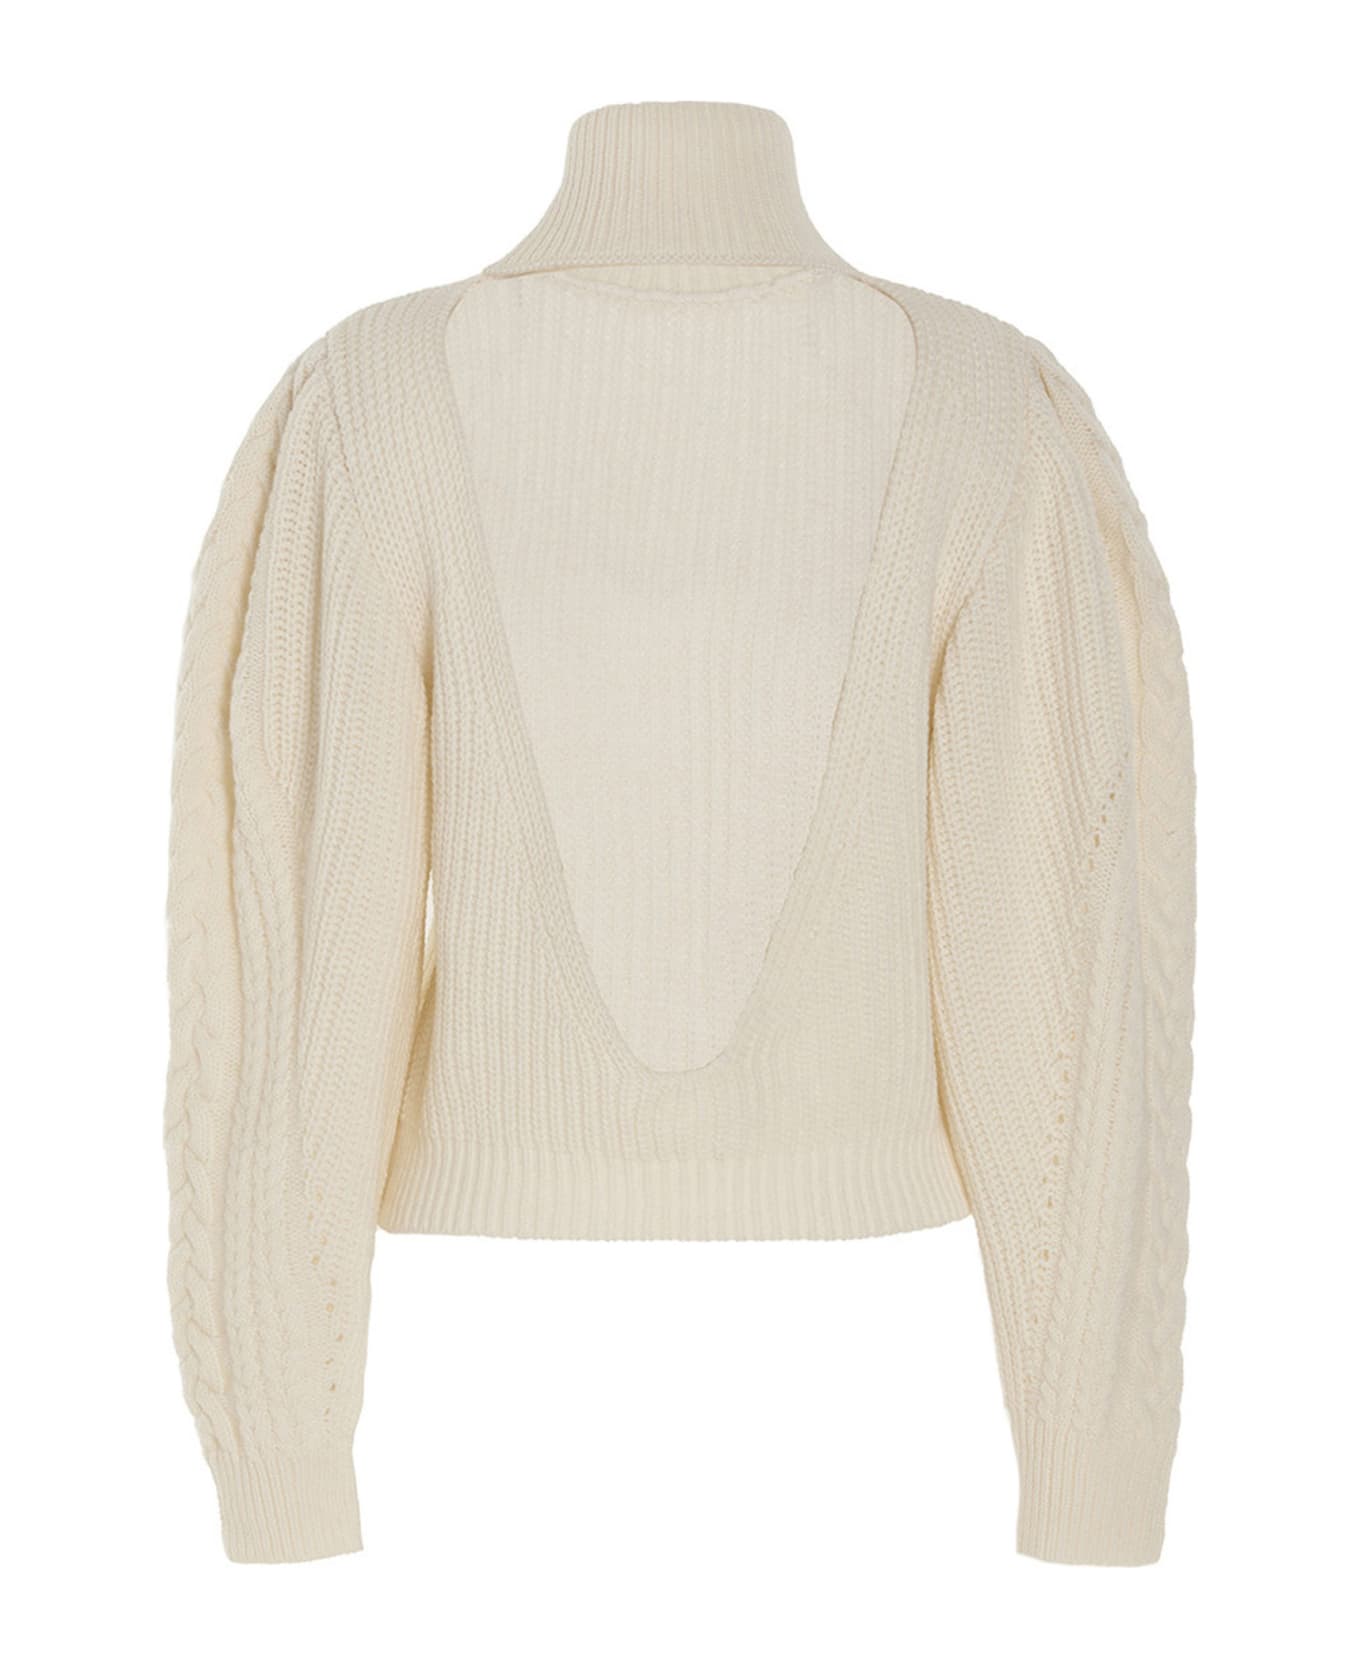 Mixik 'monique Sweater - White